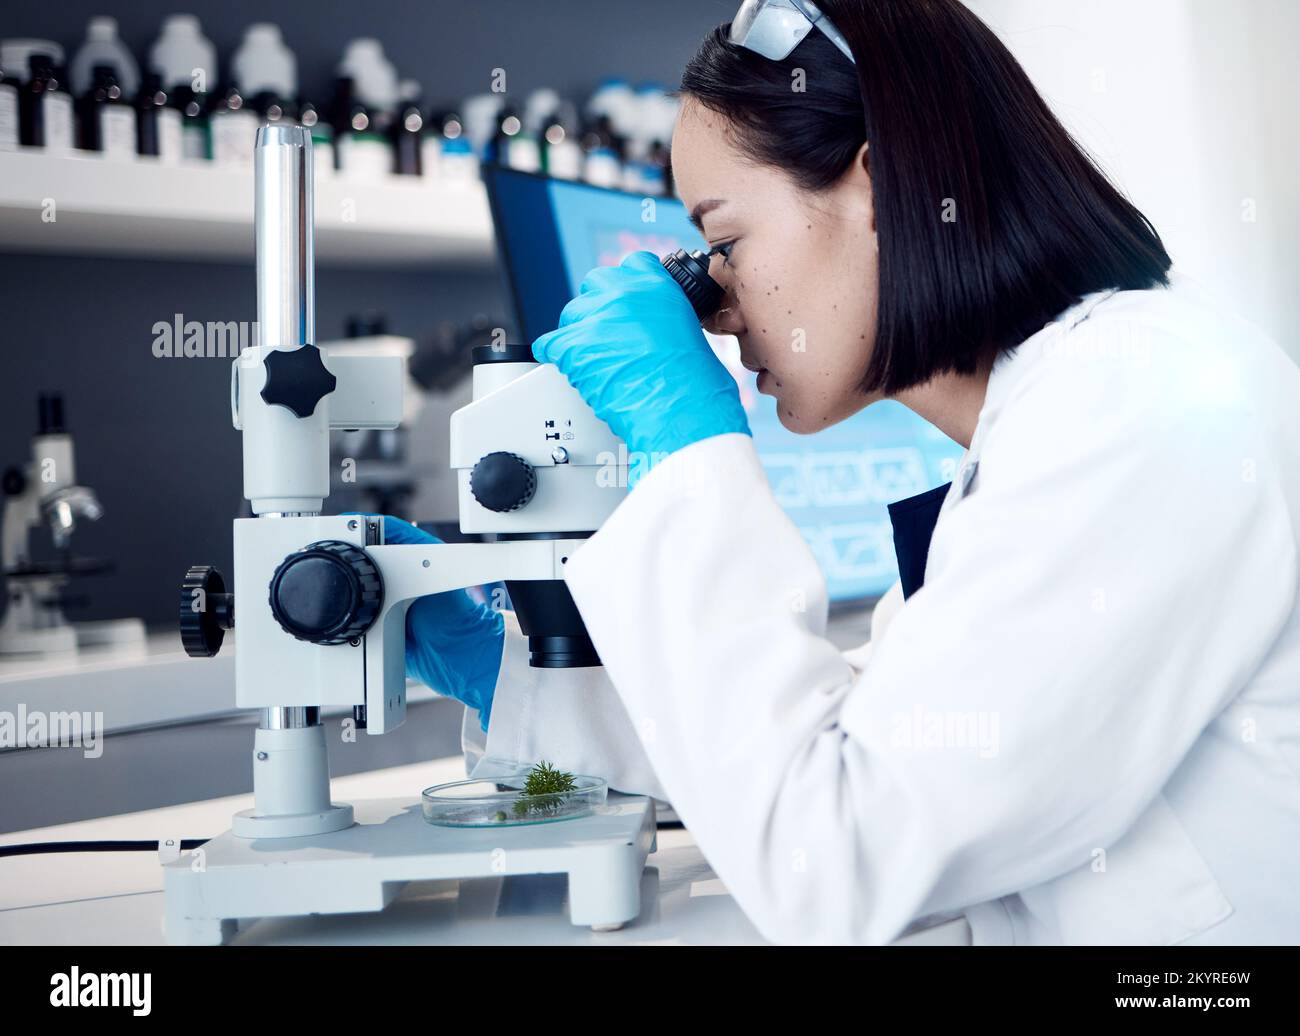 Botanik, Mikroskop-Pflanzenanalyse oder wissenschaftliche Forschung für natürliche Arzneimittel, biotechnologische Innovation oder Ökologie. Marihuana Stockfoto